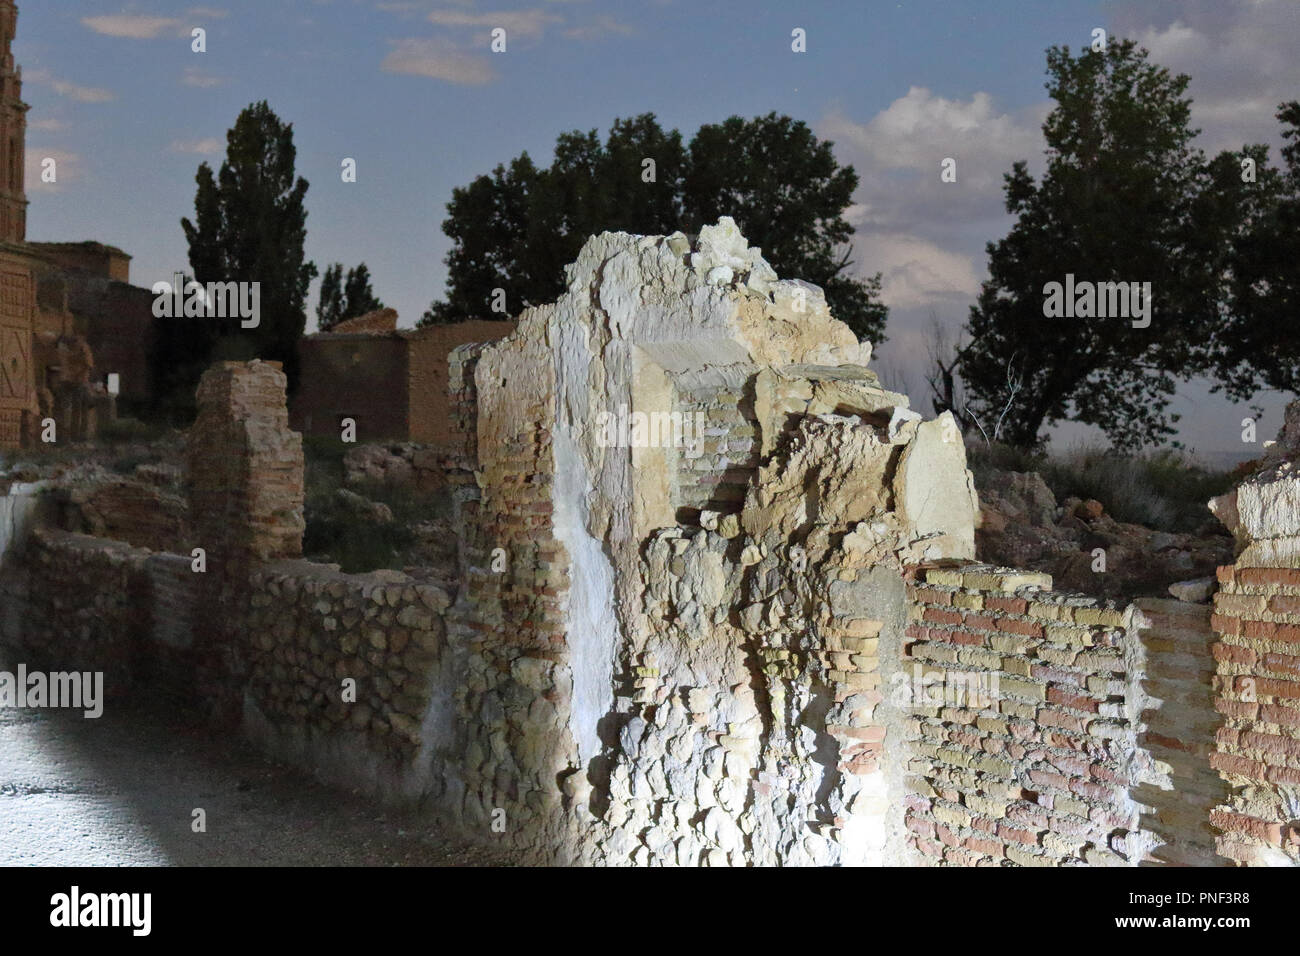 Ein Polterte Mauer beim Besuch, als Tourist, das zerstörte Belchite, einem kleinen Aragon Stadt durch faschistische Kräfte während des Spanisch Bürgerkrieg bombardiert Stockfoto